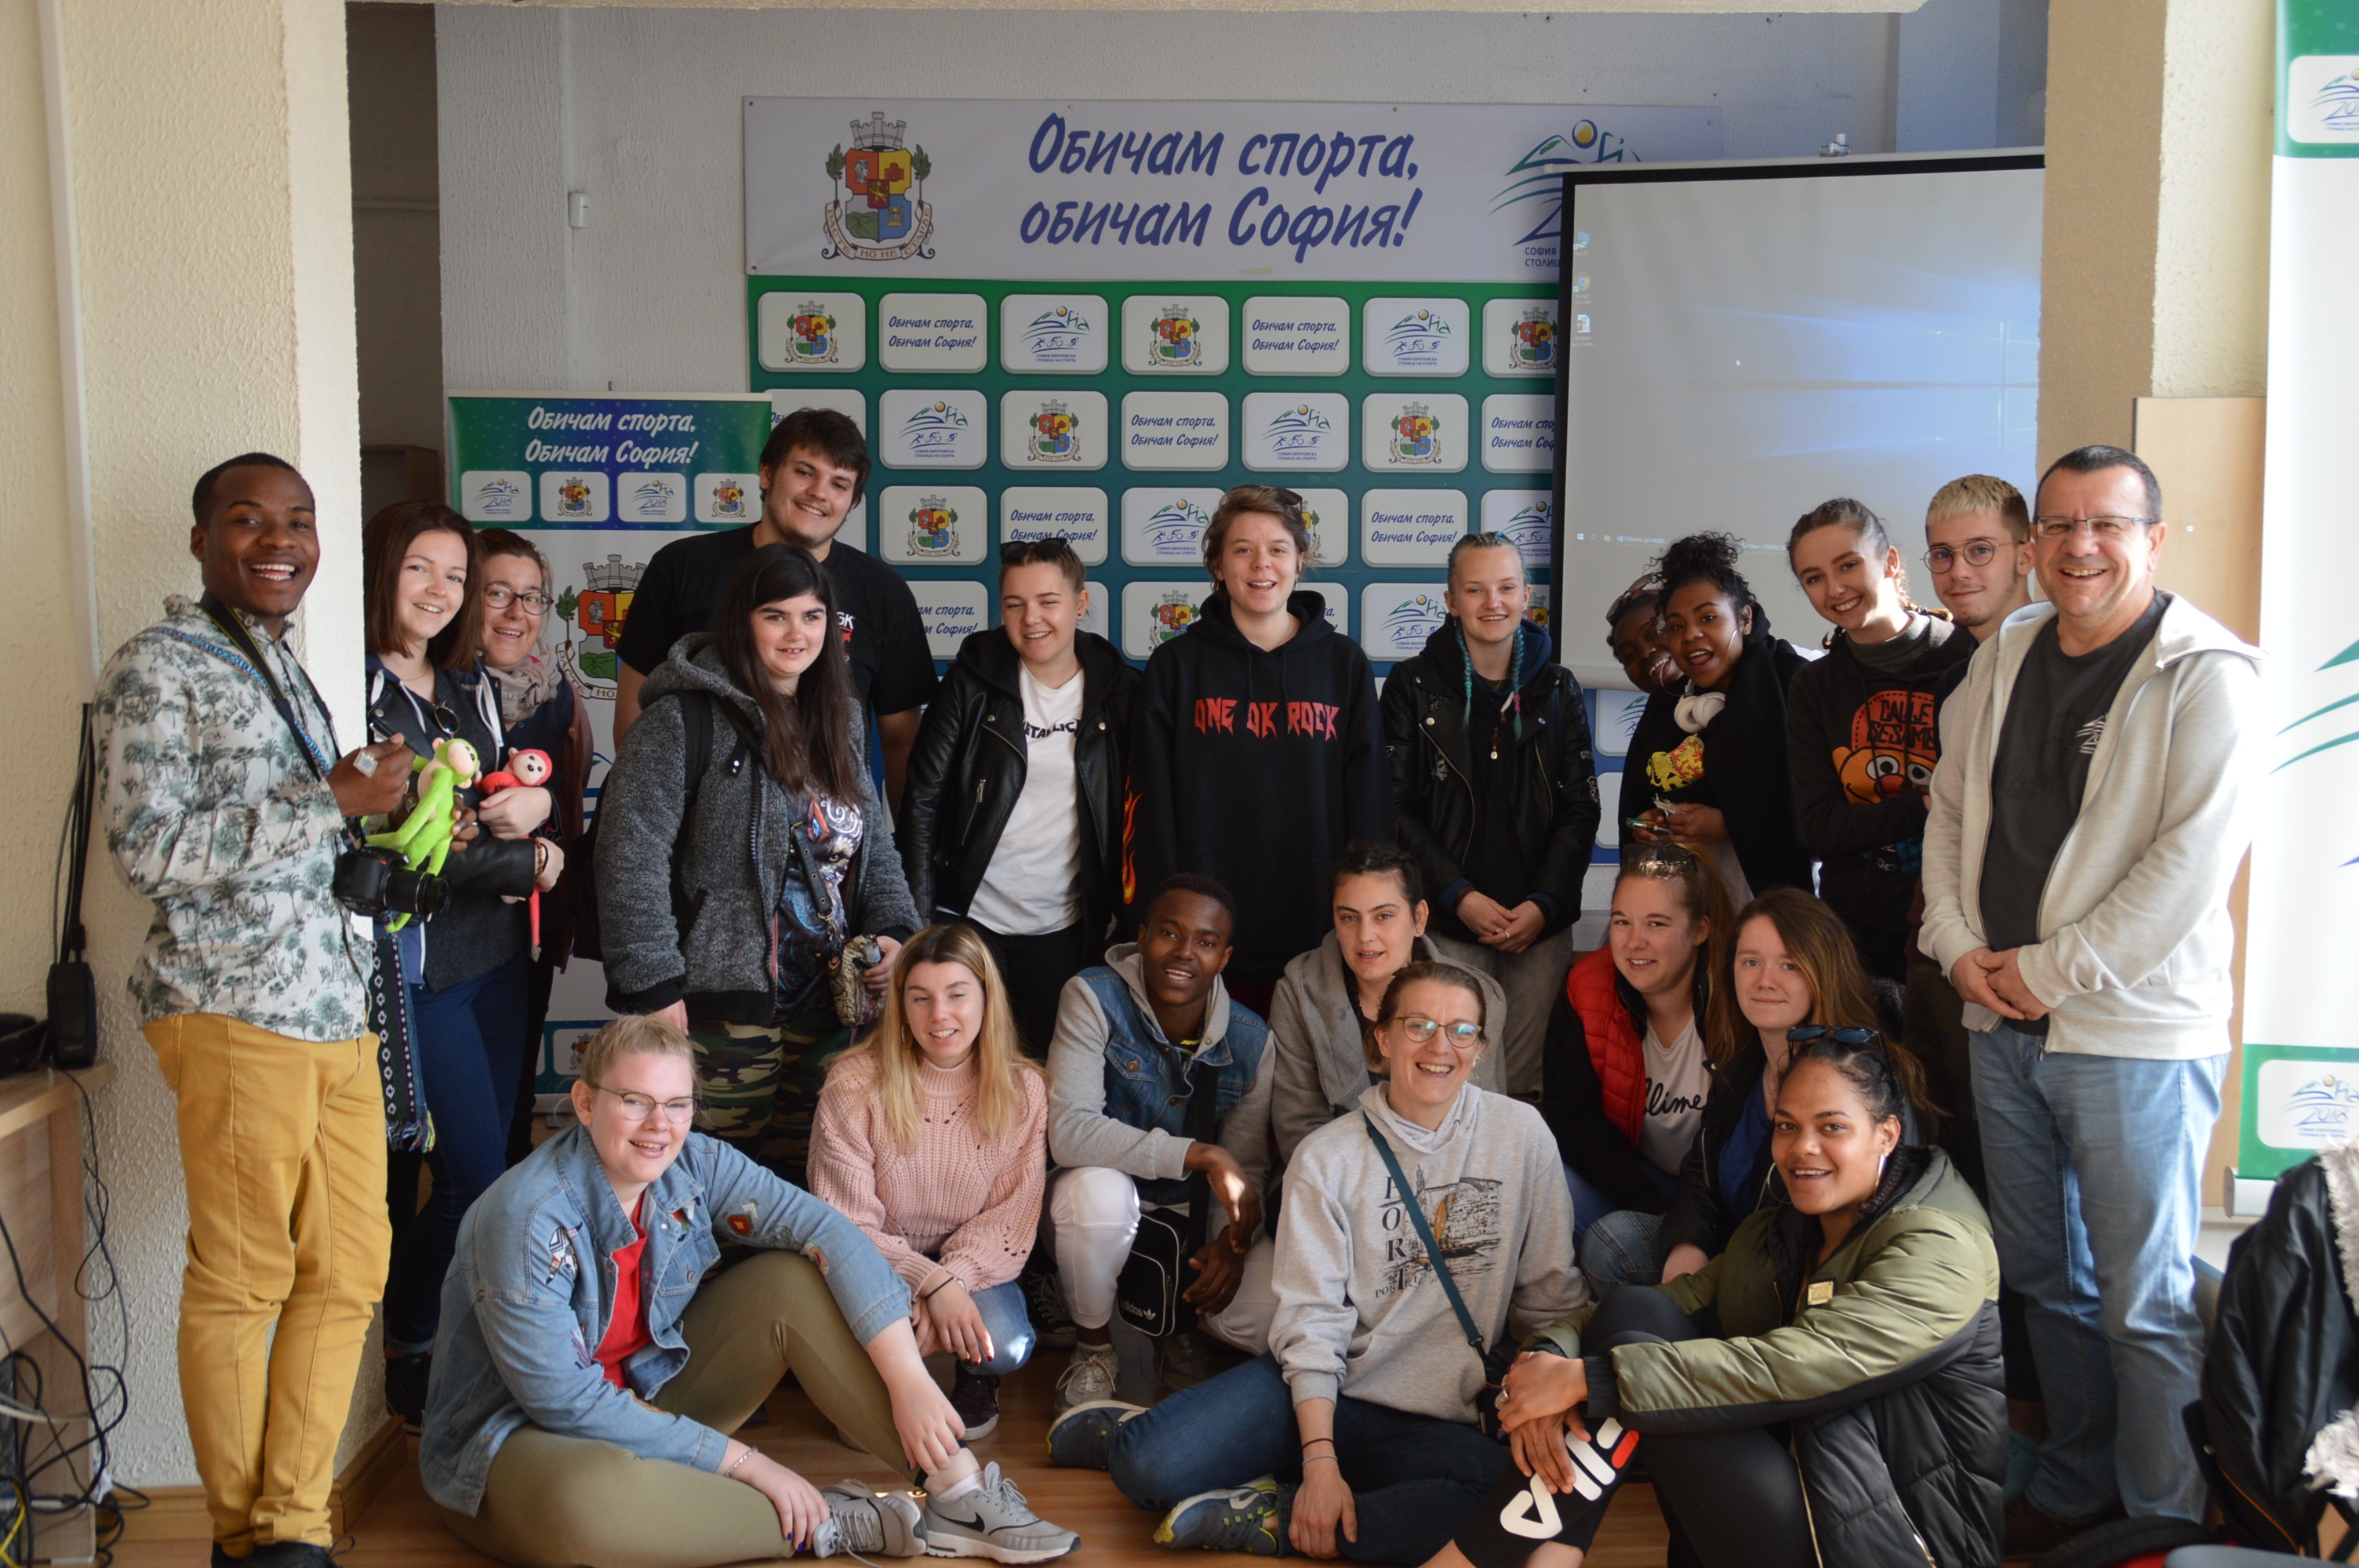 Група от 28 френски ученици посетиха днес Информационния център на